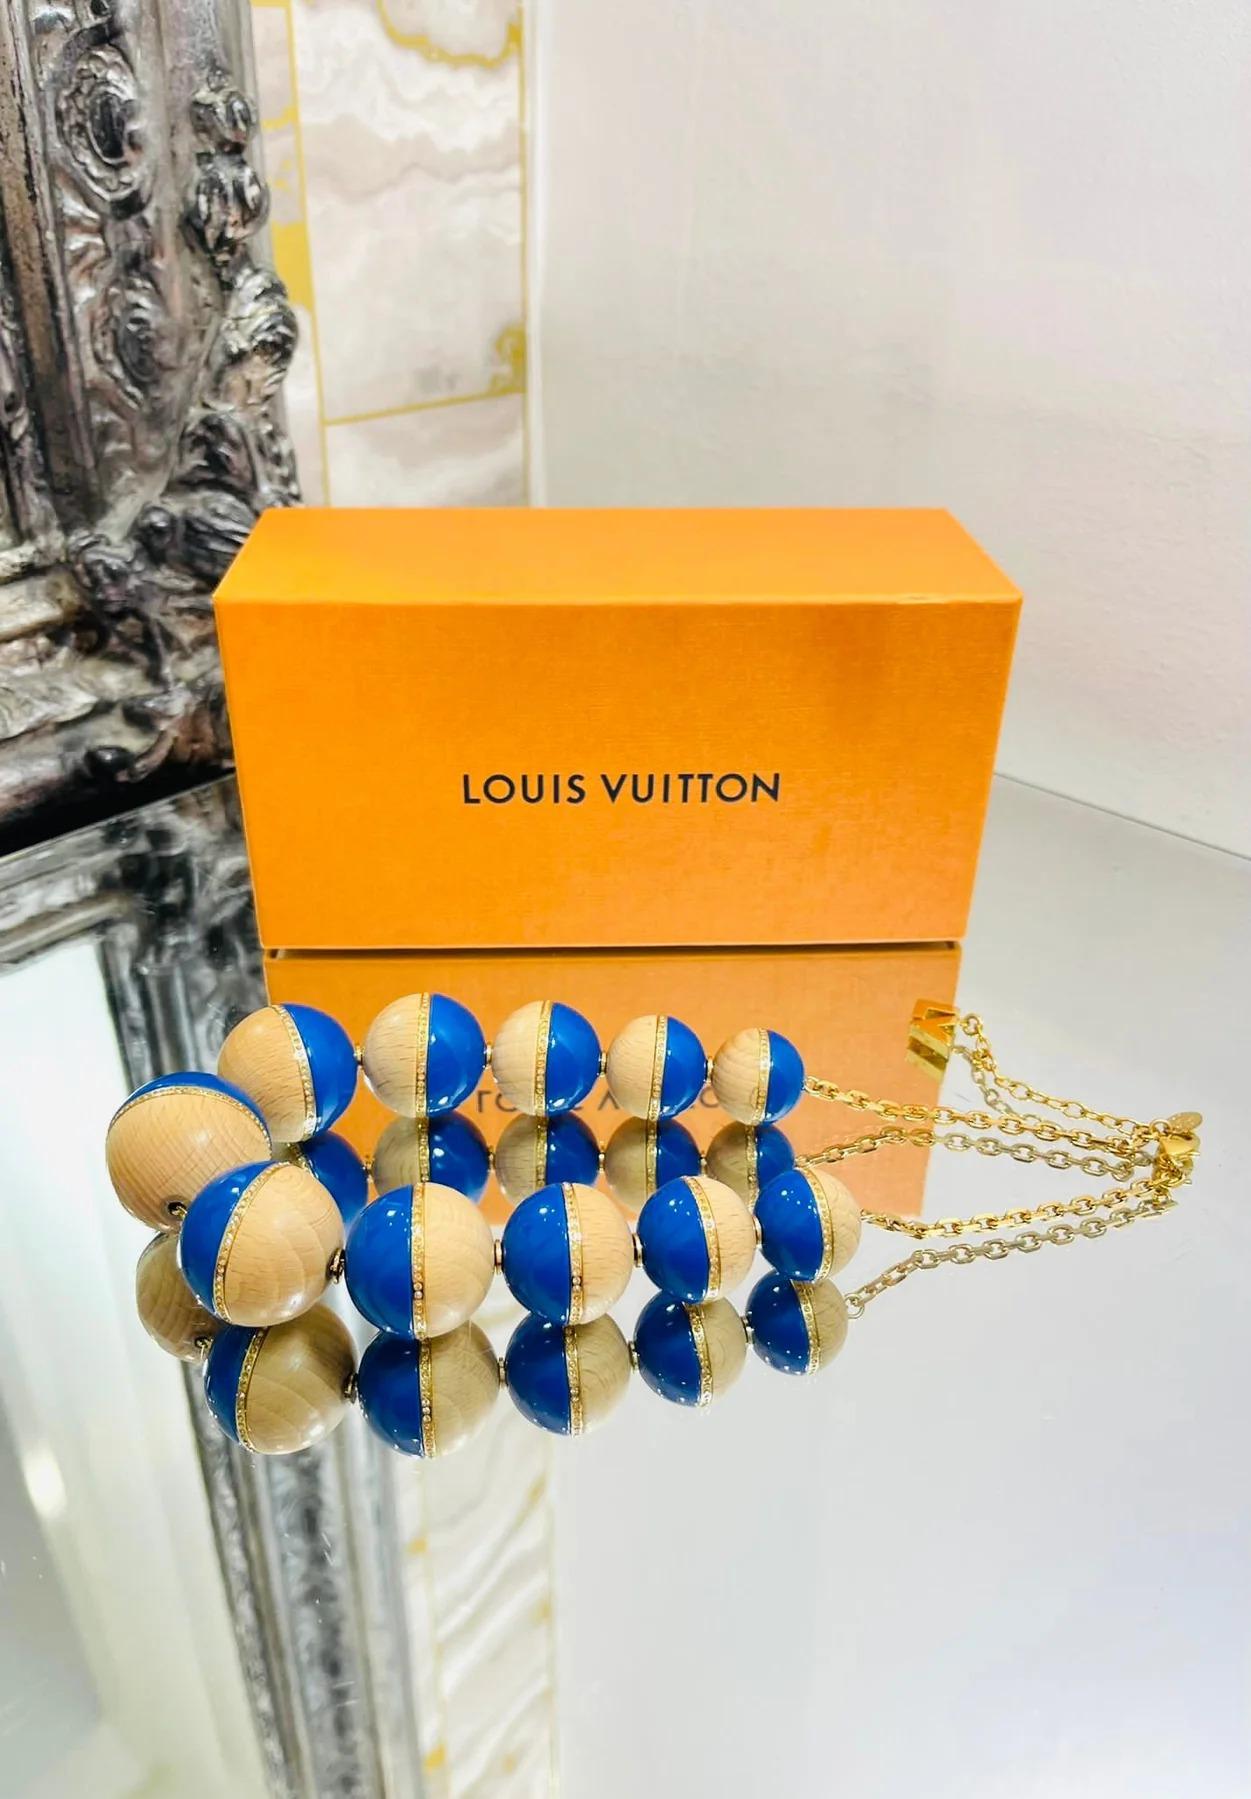 Louis Vuitton, collier de perles en cristal, bois et résine

De grande taille, en résine bleue, en bois avec des ornements en cristal et une chaîne en or. Fermeture avec fermoir en forme de homard et logo 